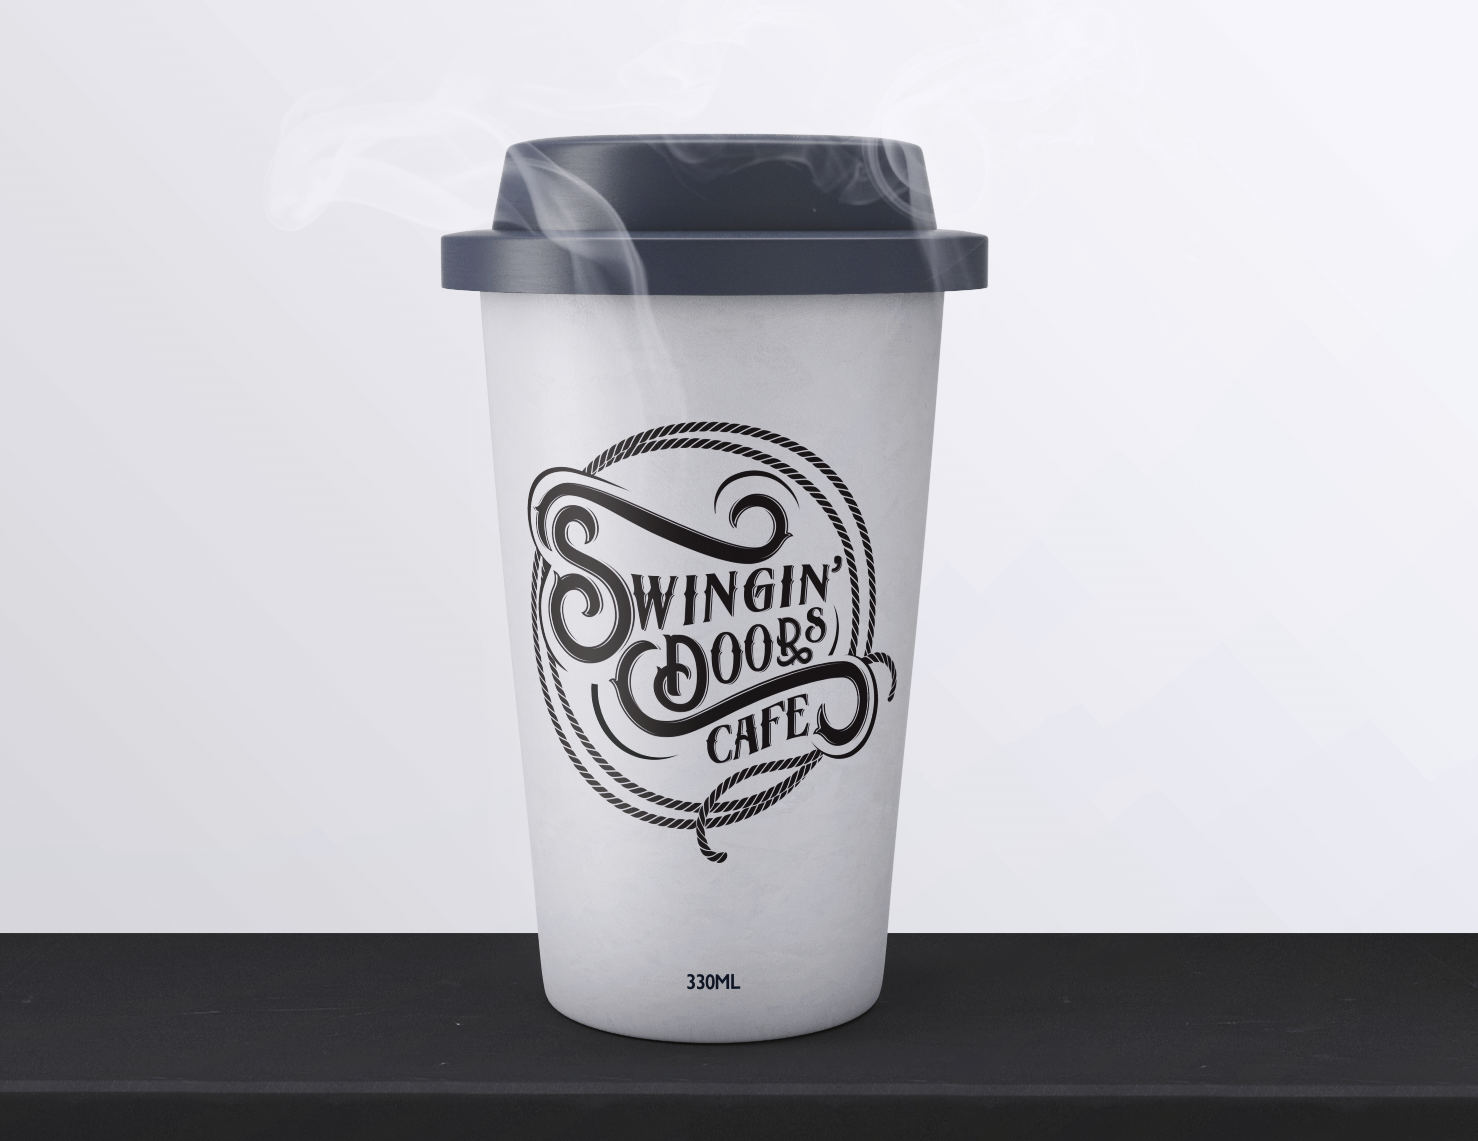 Swingin' Doors Cafe - Cloud9 Branding Project